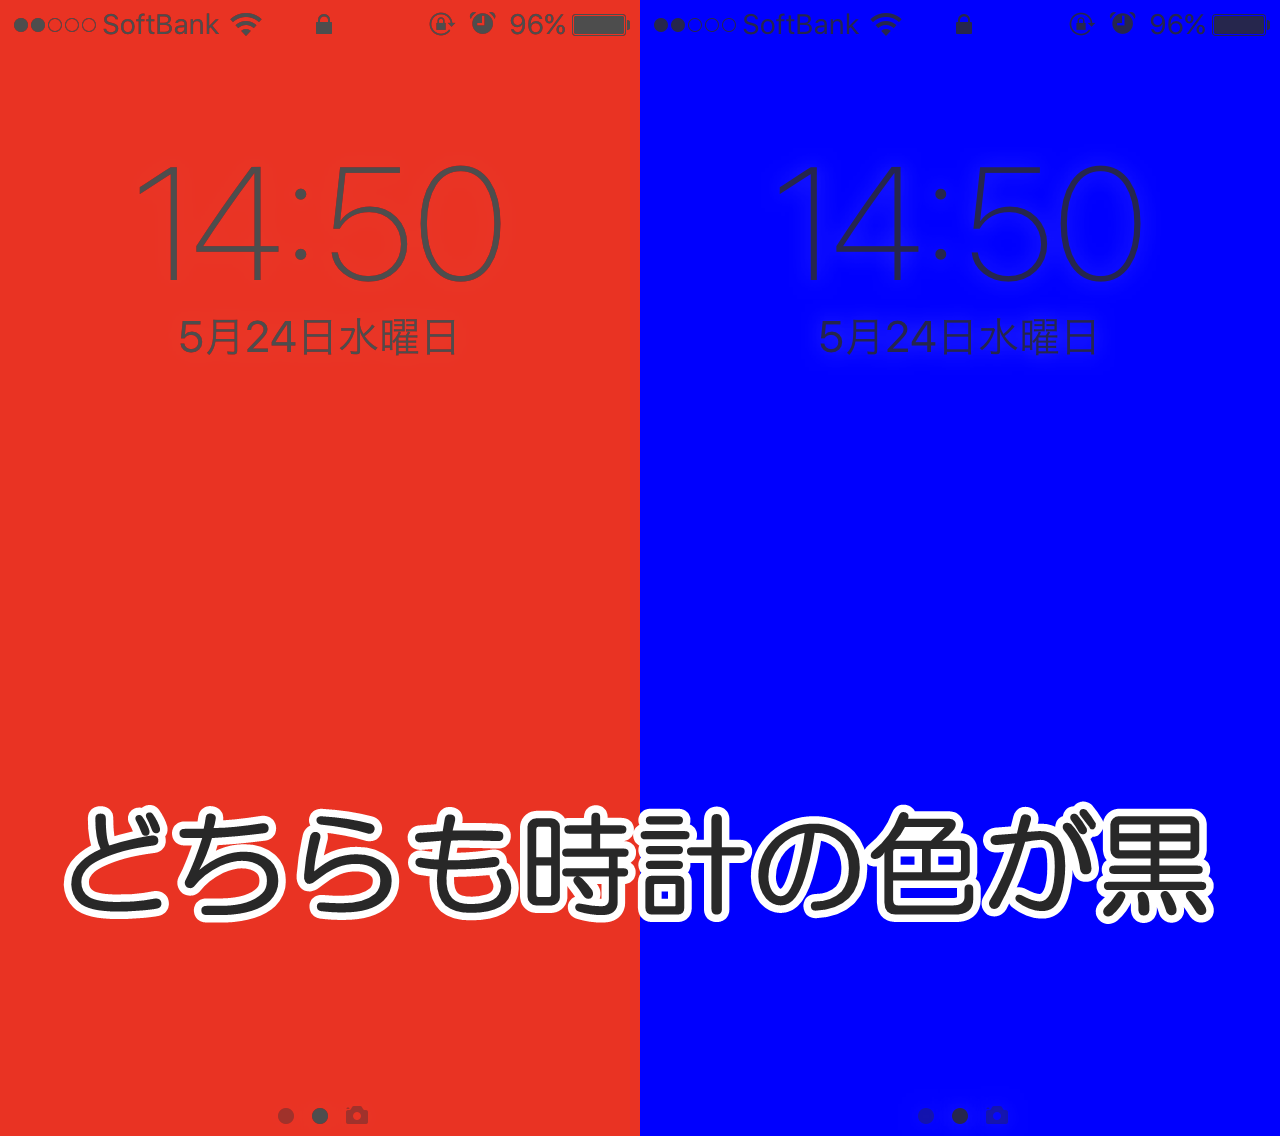 Iphoneのロック画面の時計の位置や色を変更することが可能か検証